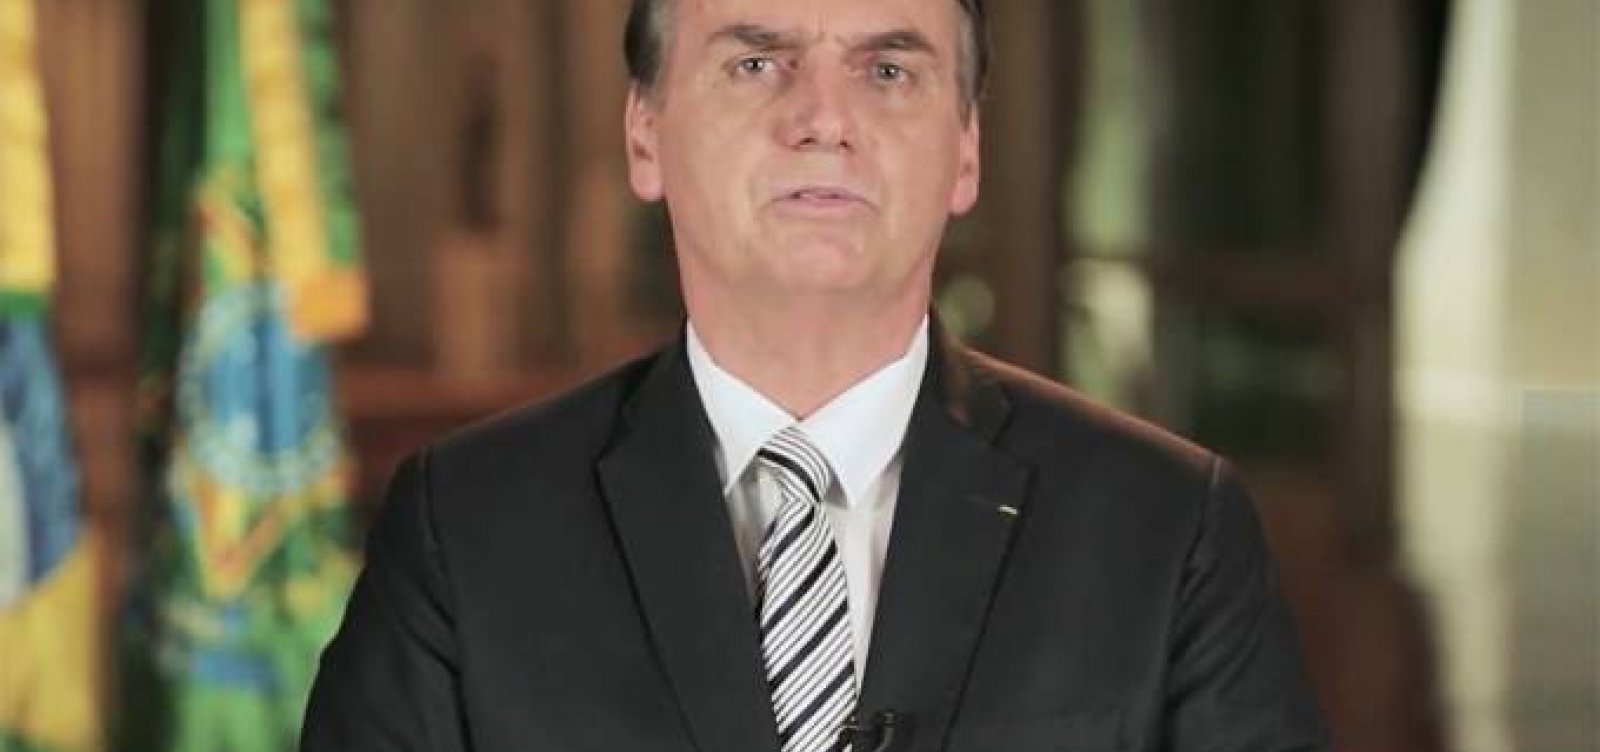 Em pronunciamento na TV, Bolsonaro diz que 'nova Previdência será justa'